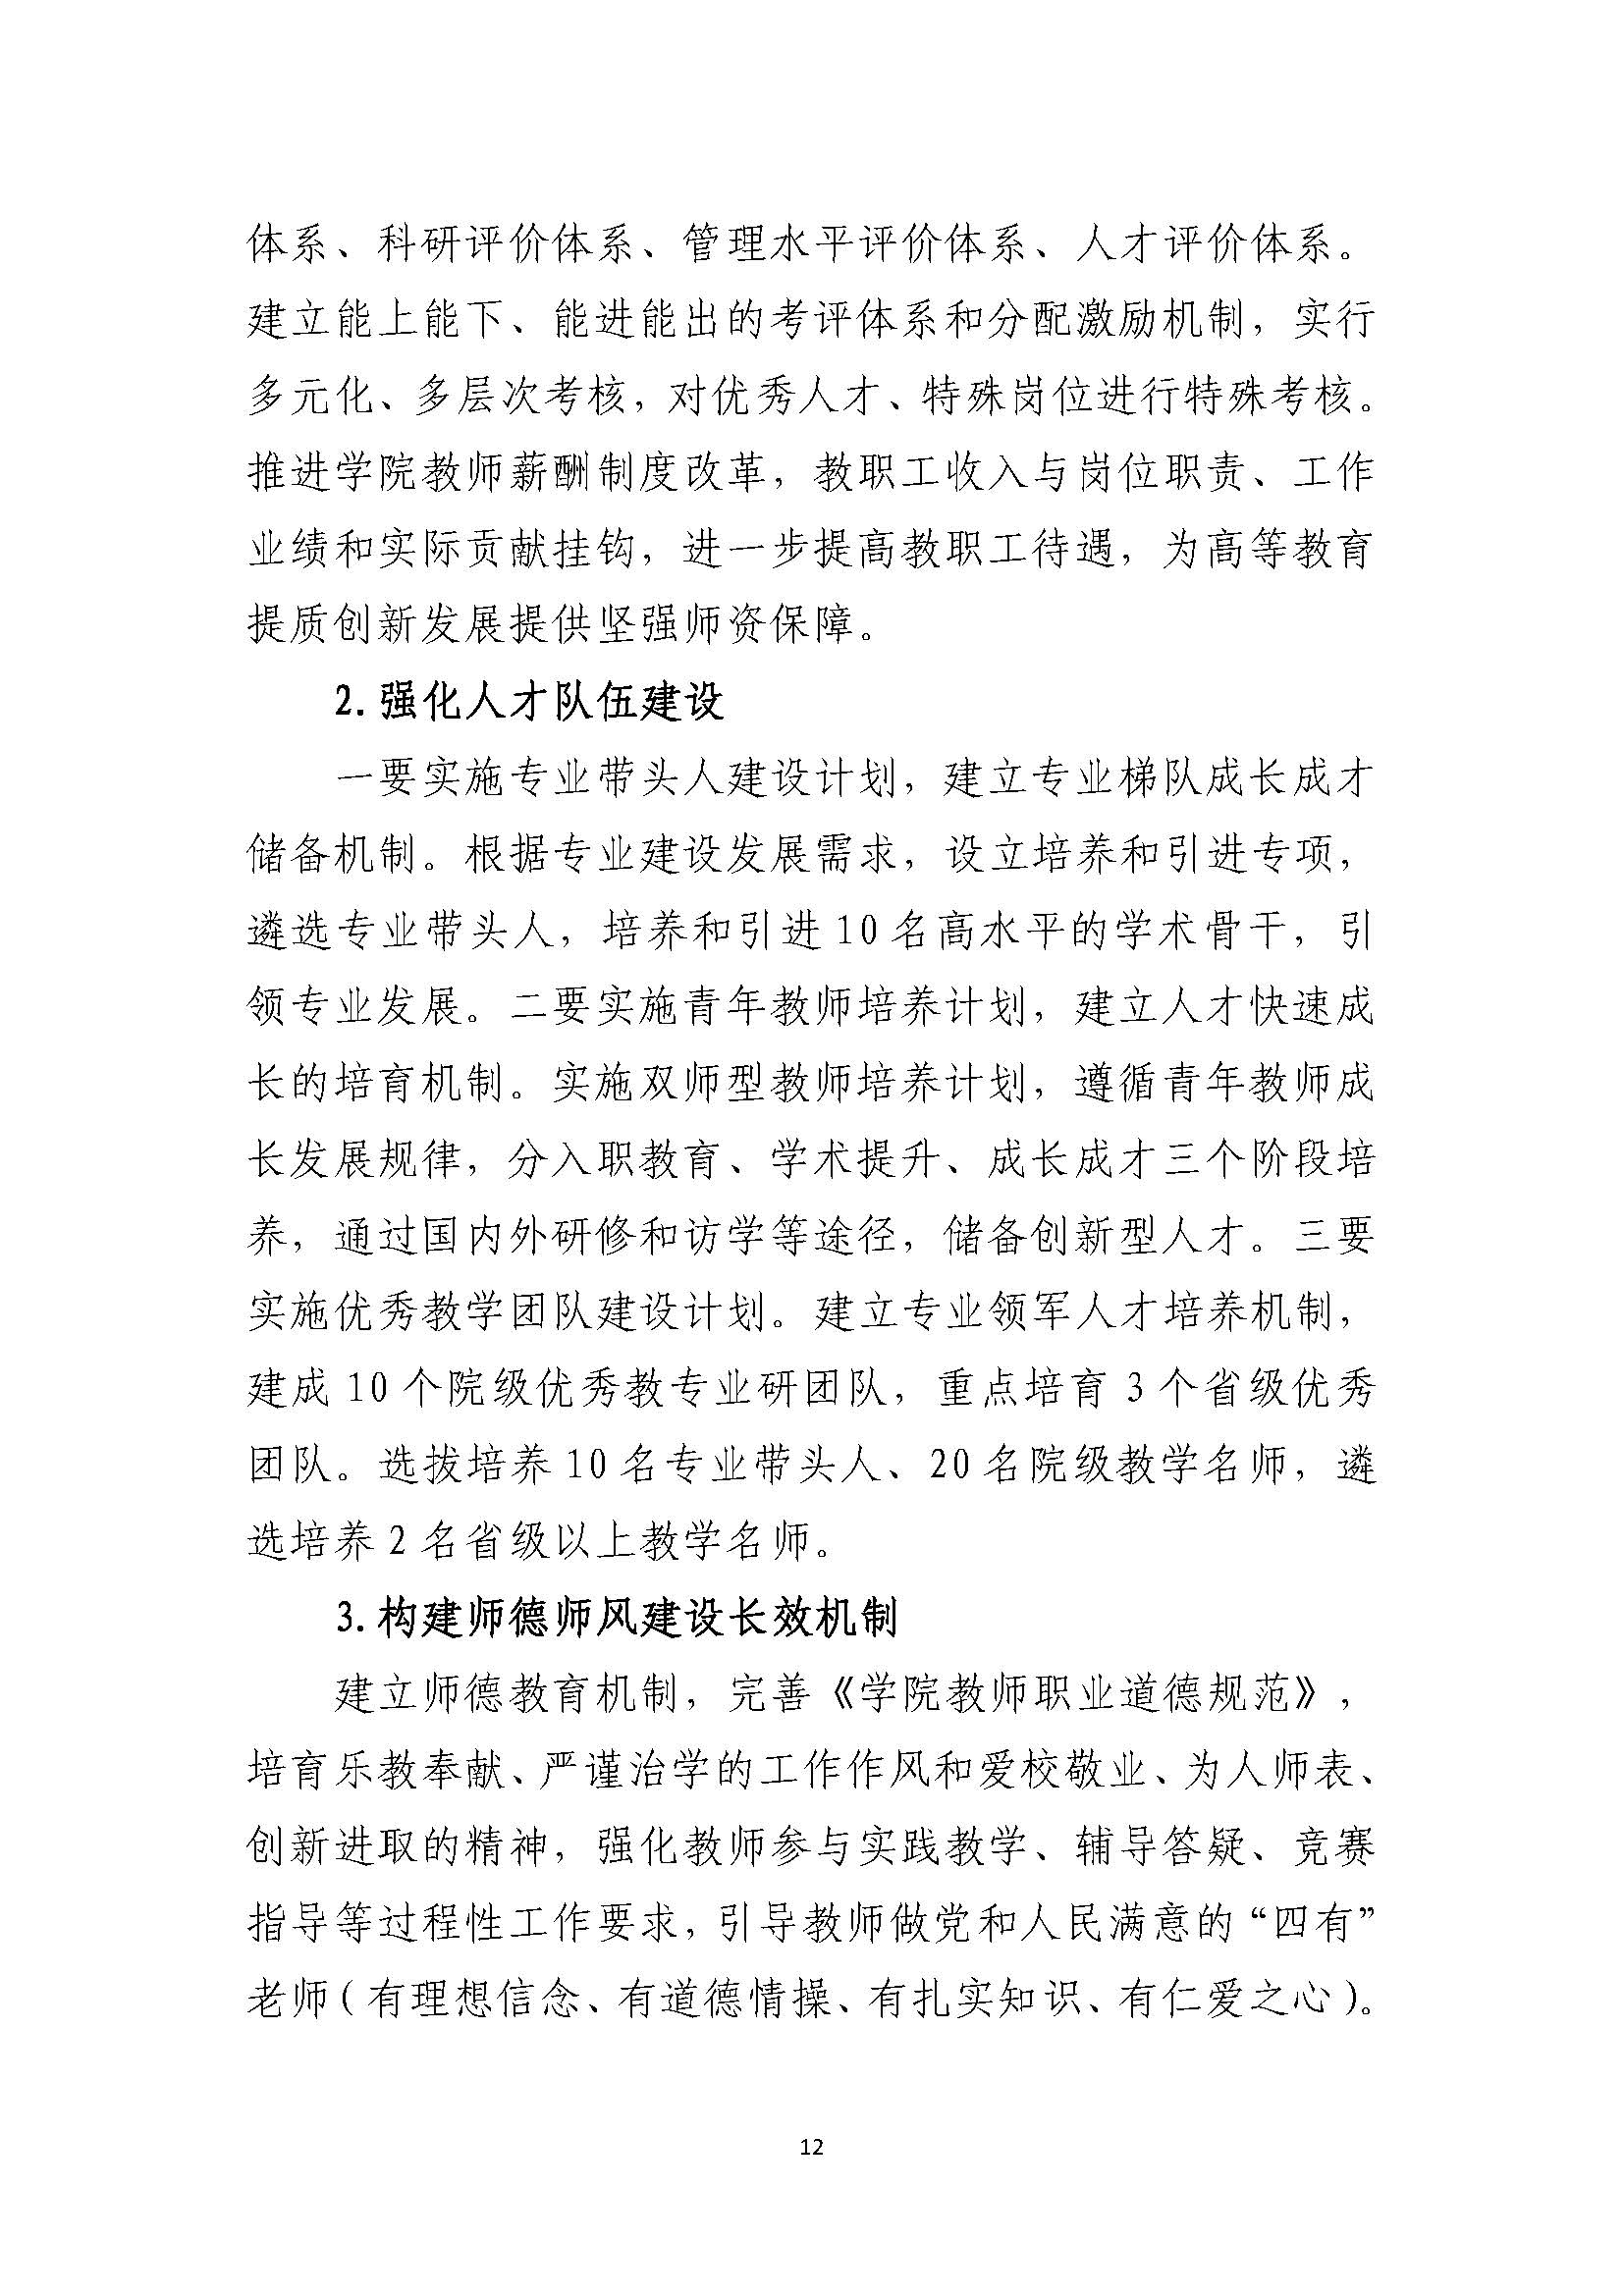 郑州黄河护理职业学院2021-2025年发展规划_页面_12.jpg